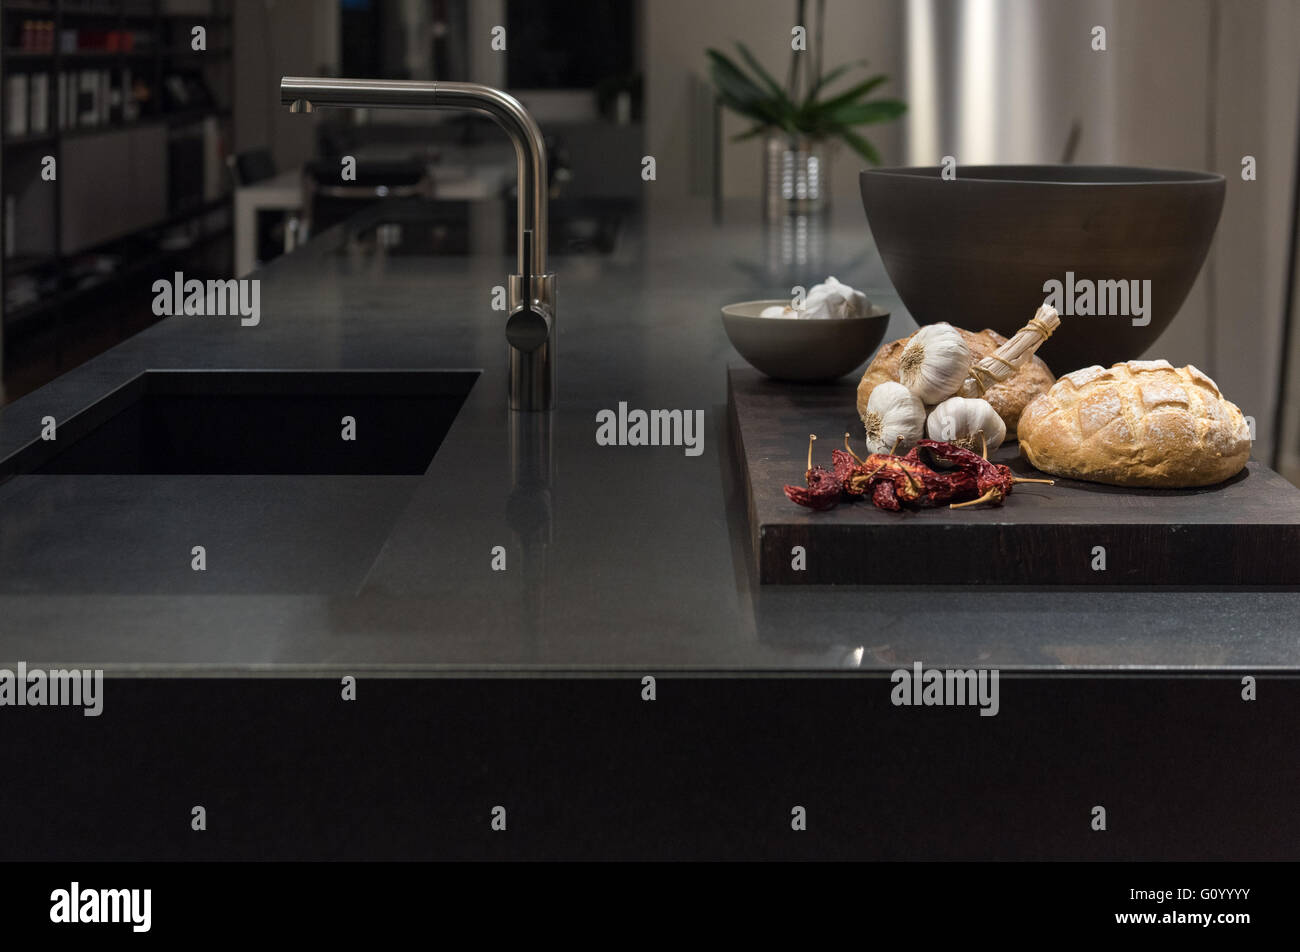 Fregadero de la cocina con accesorios negros y jabón Fotografía de stock -  Alamy